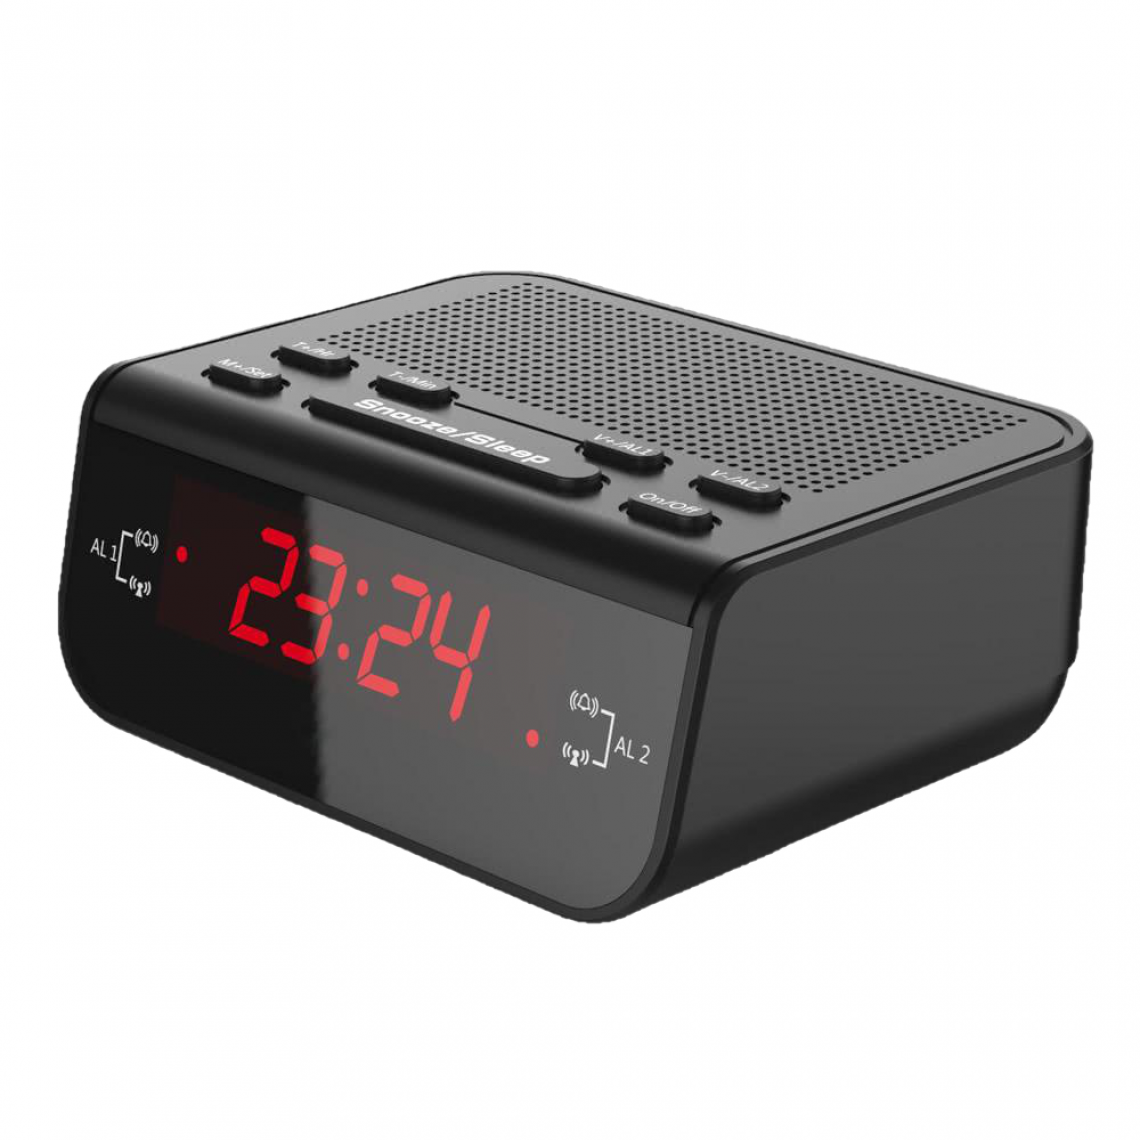 Justgreenbox - Radio FM avec réveil numérique compact avec fonction de sommeil snooze à double alarme - T6112211962252 - Horloges, pendules